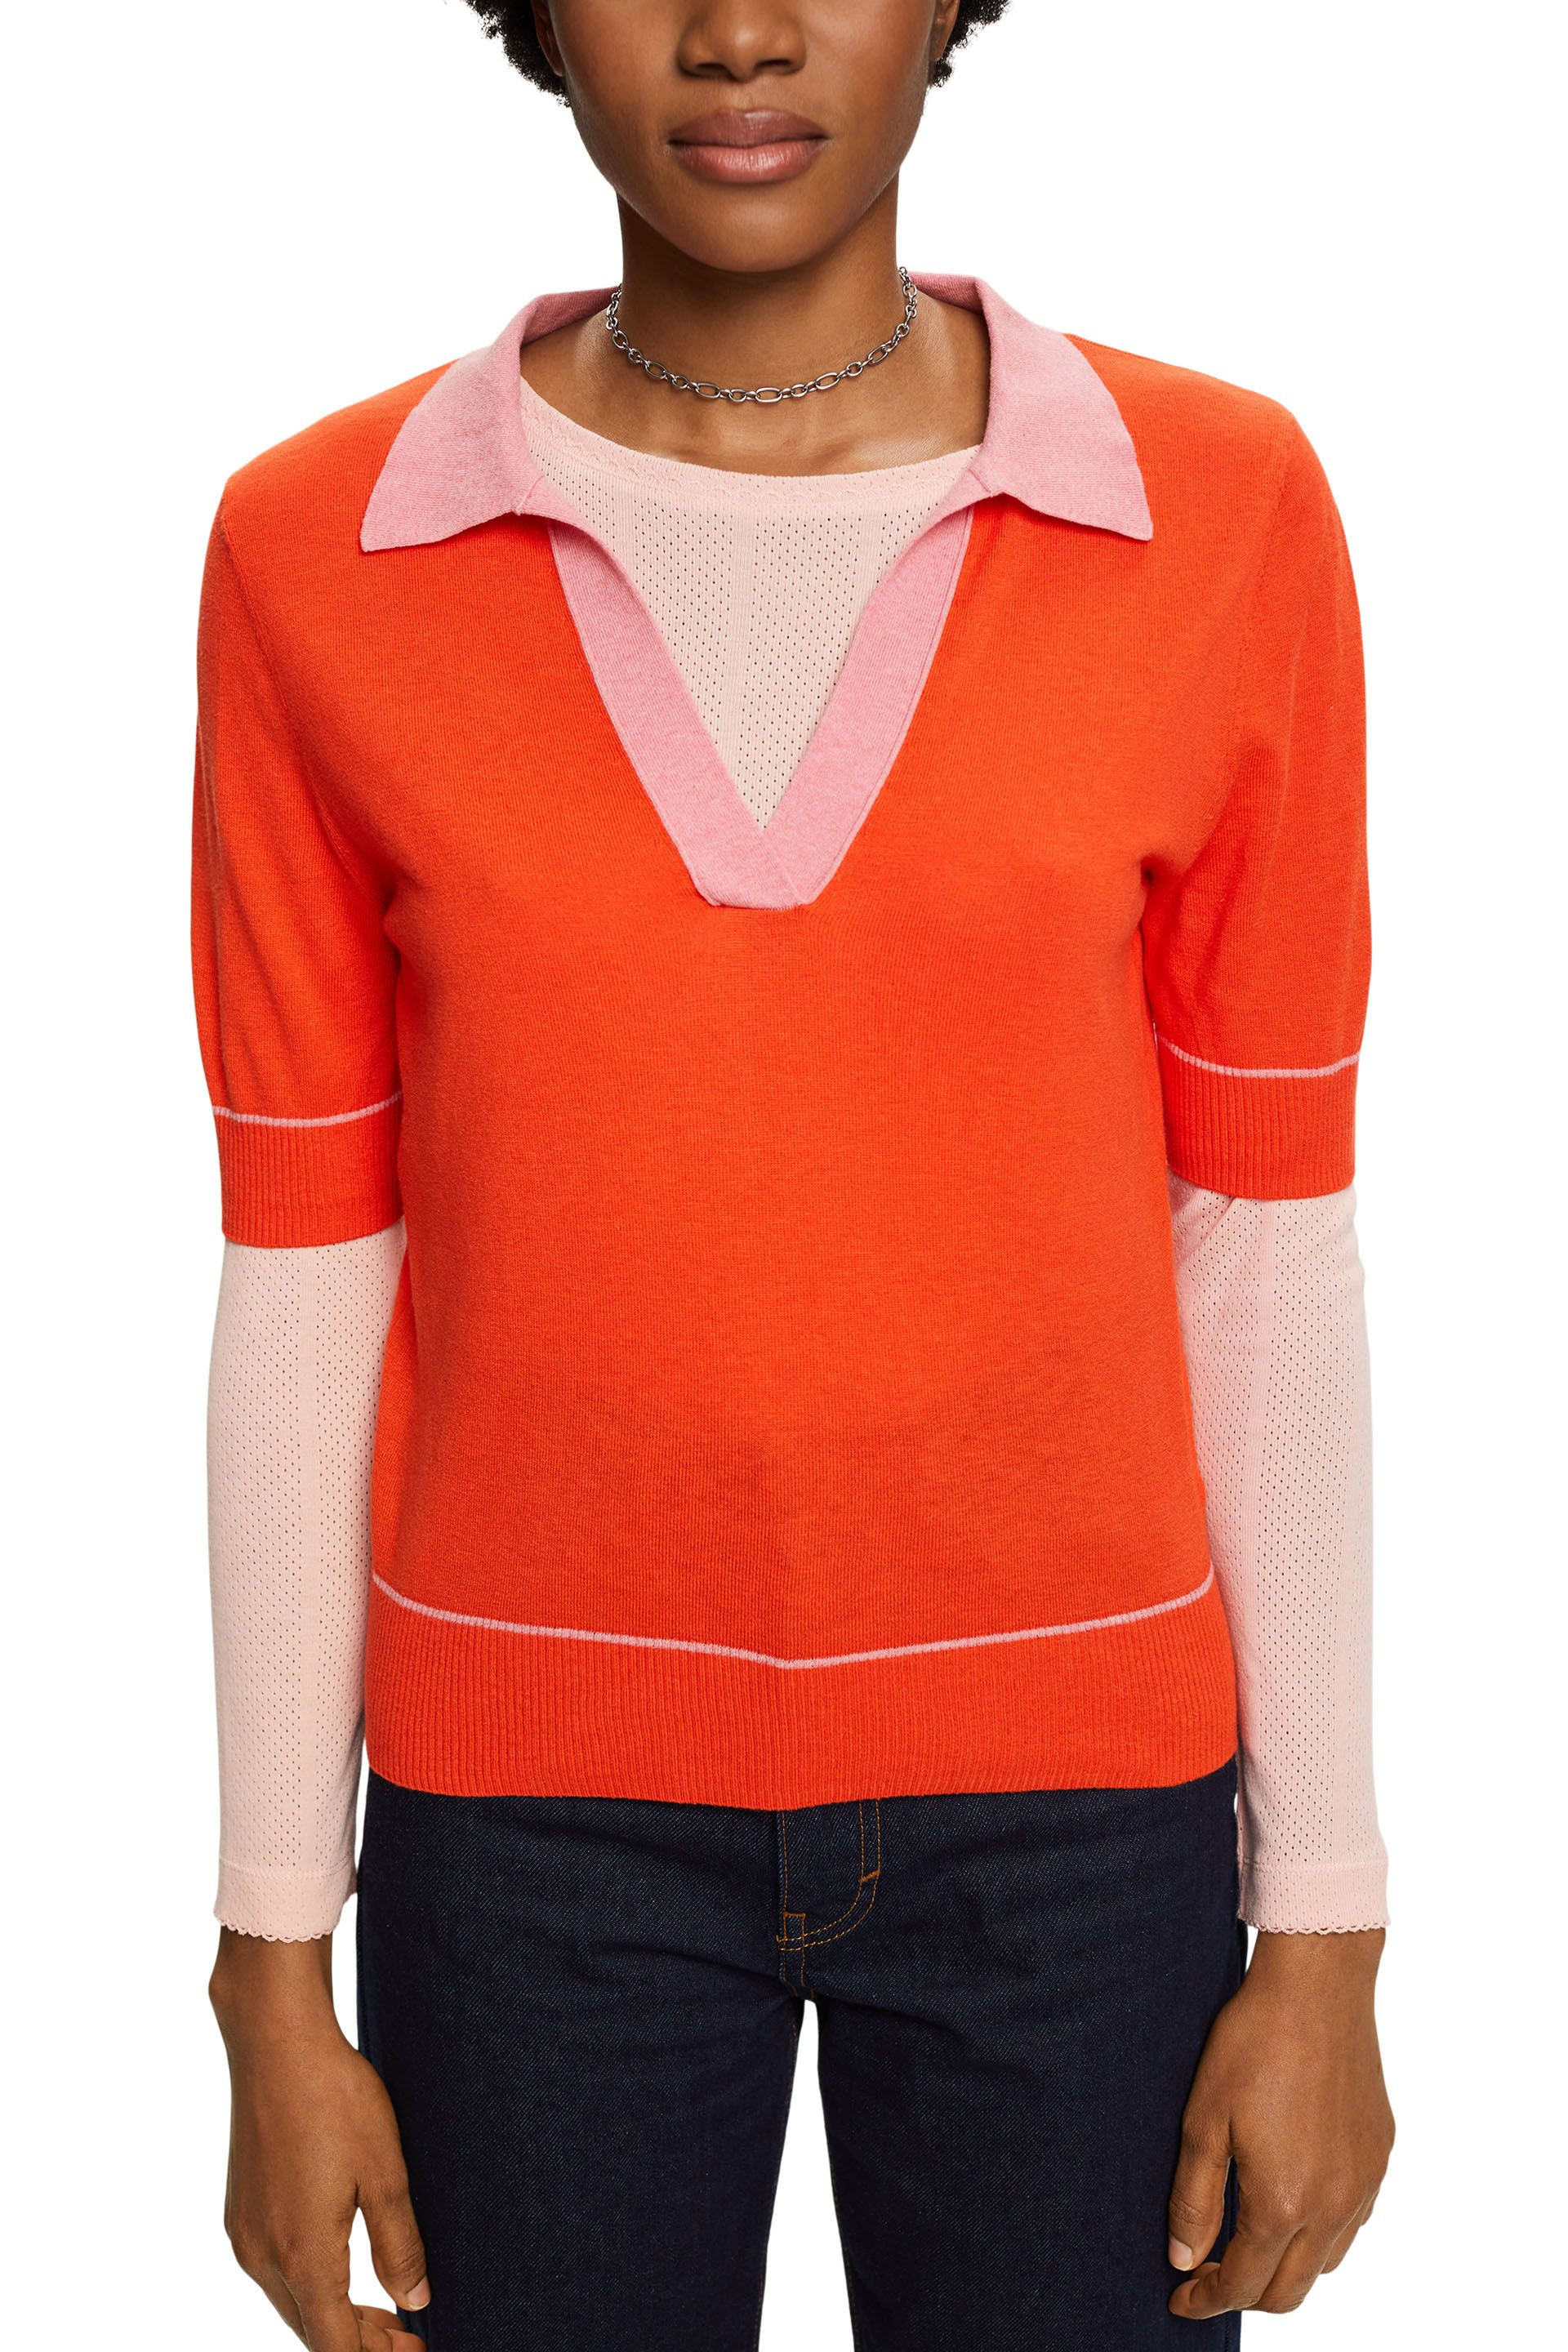 Esprit - Pullover con scollo a V, Arancione, large image number 2